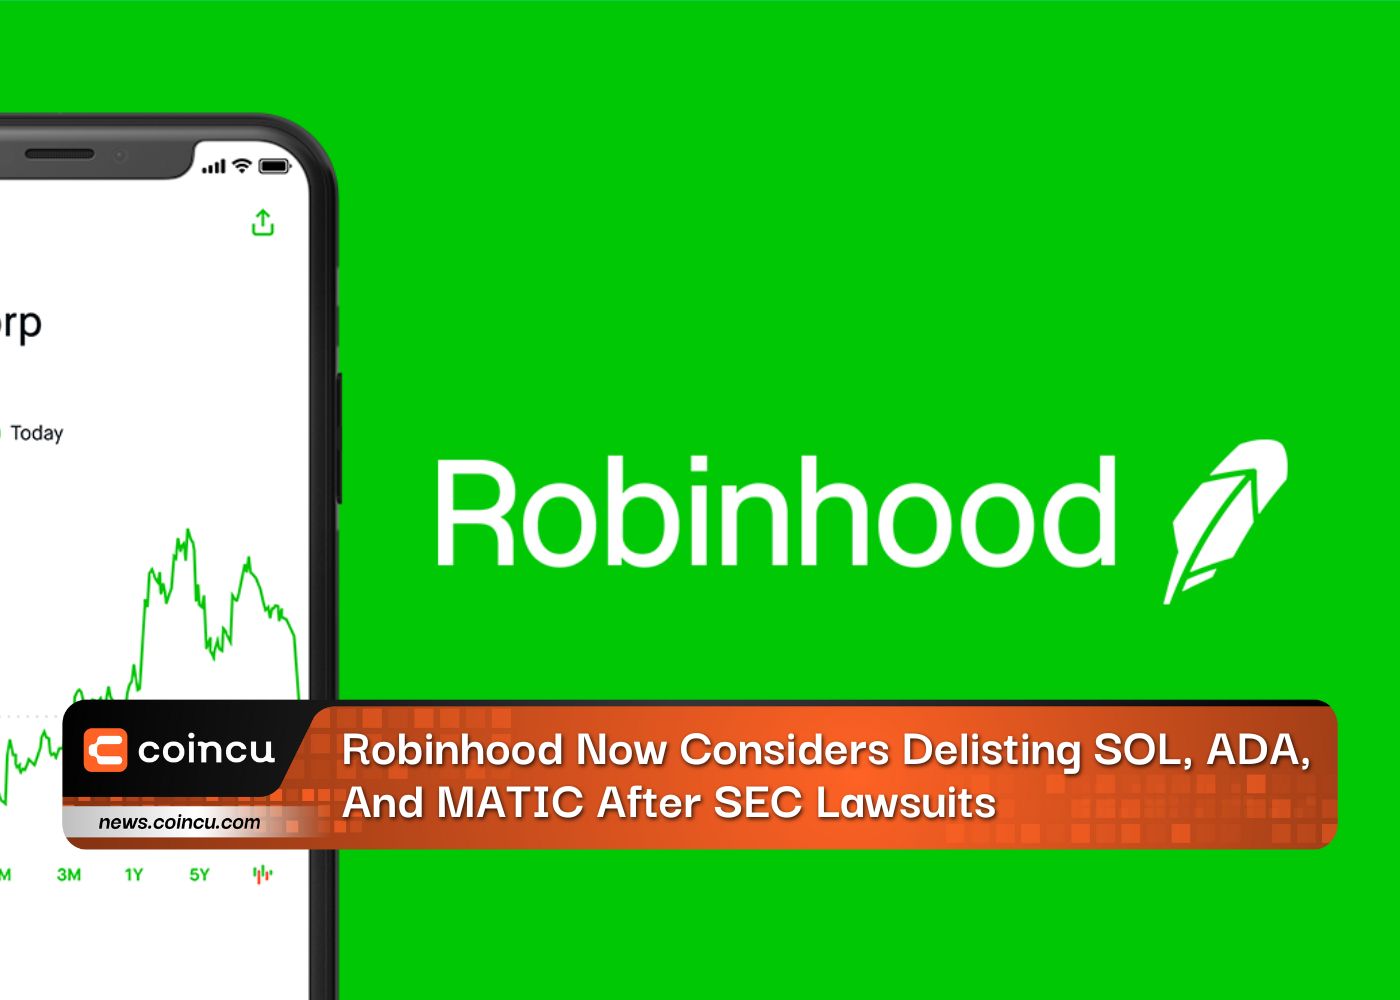 Robinhood agora considera excluir SOL, ADA e MATIC após ações judiciais da SEC: relatório